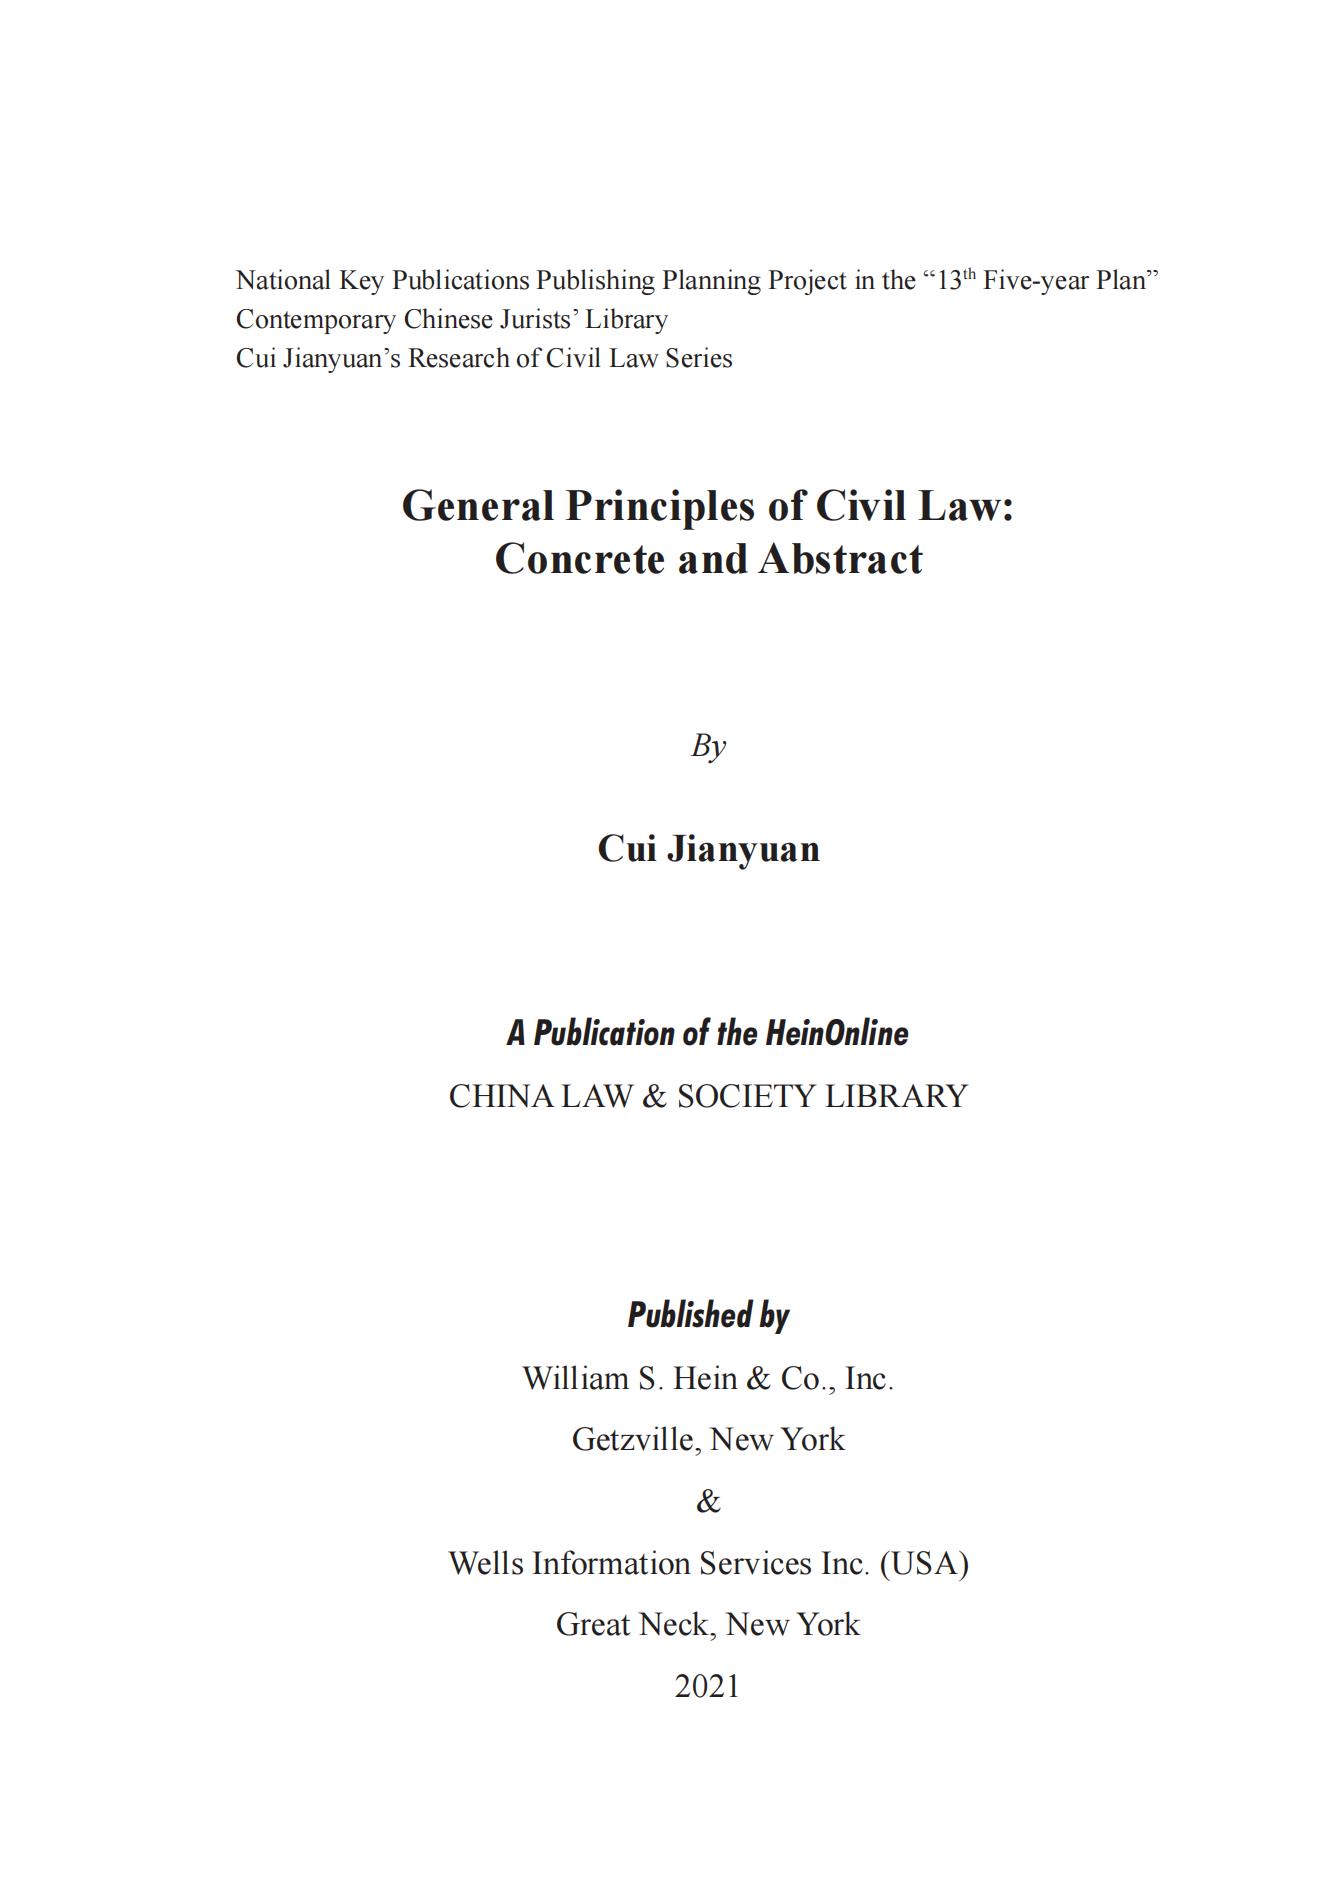 加密_General Principles of Civil Law_02.jpg